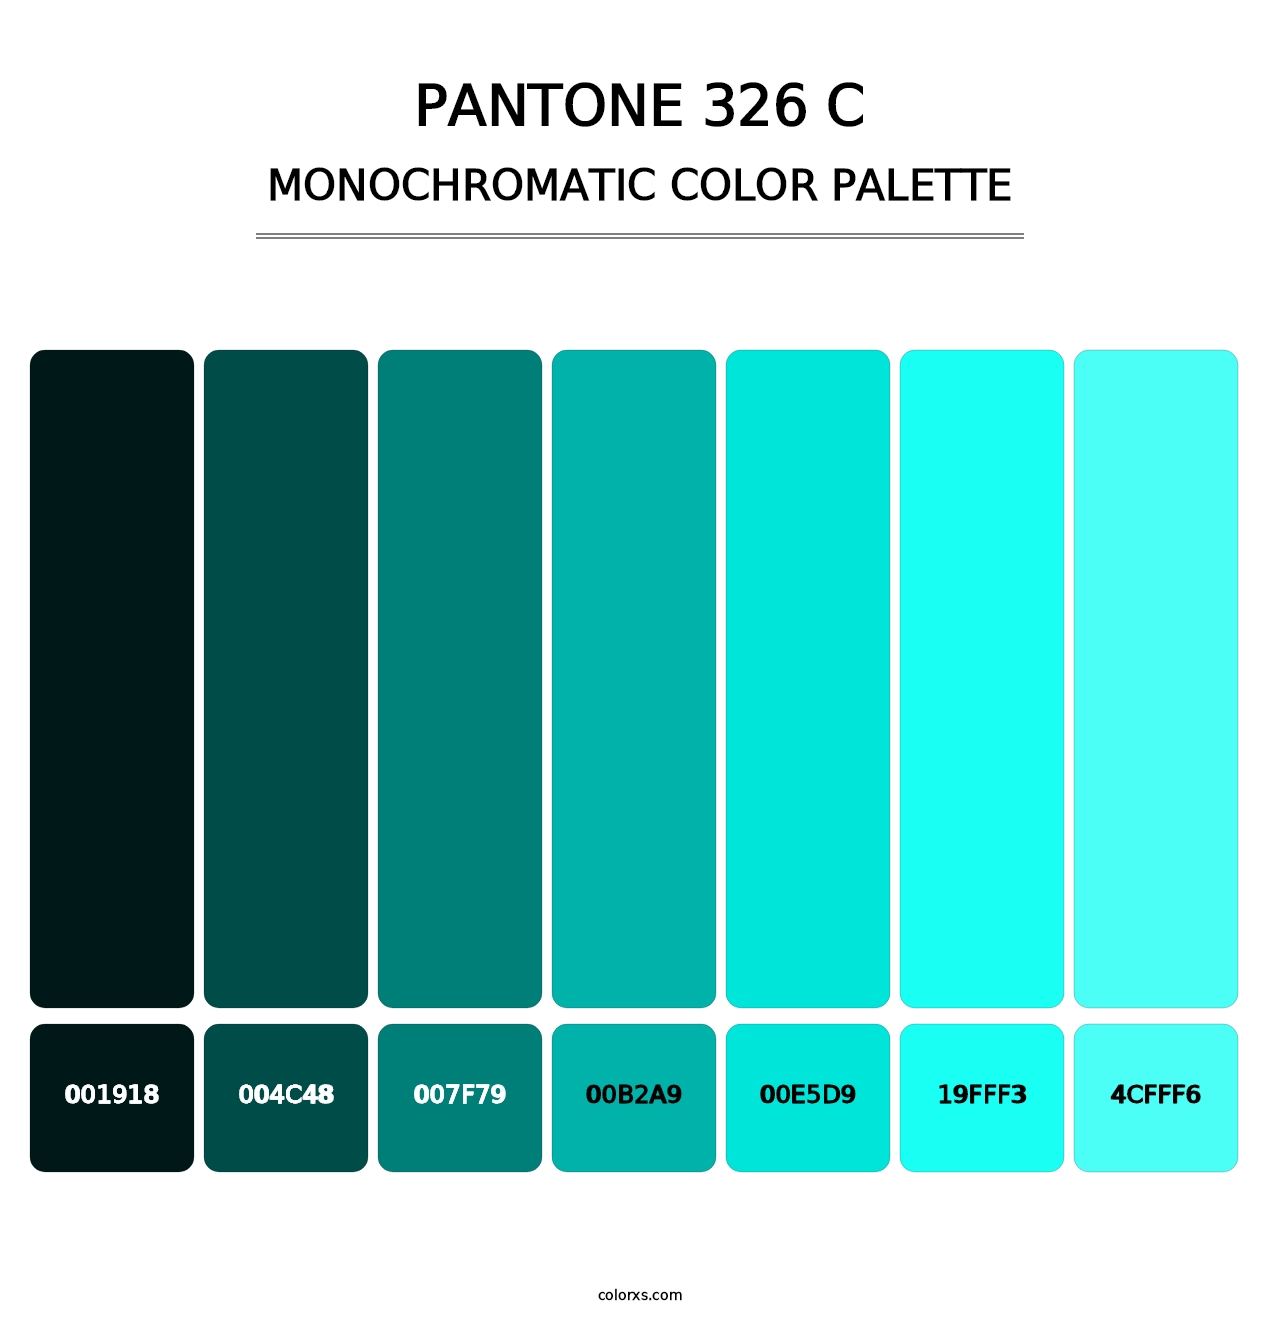 PANTONE 326 C - Monochromatic Color Palette